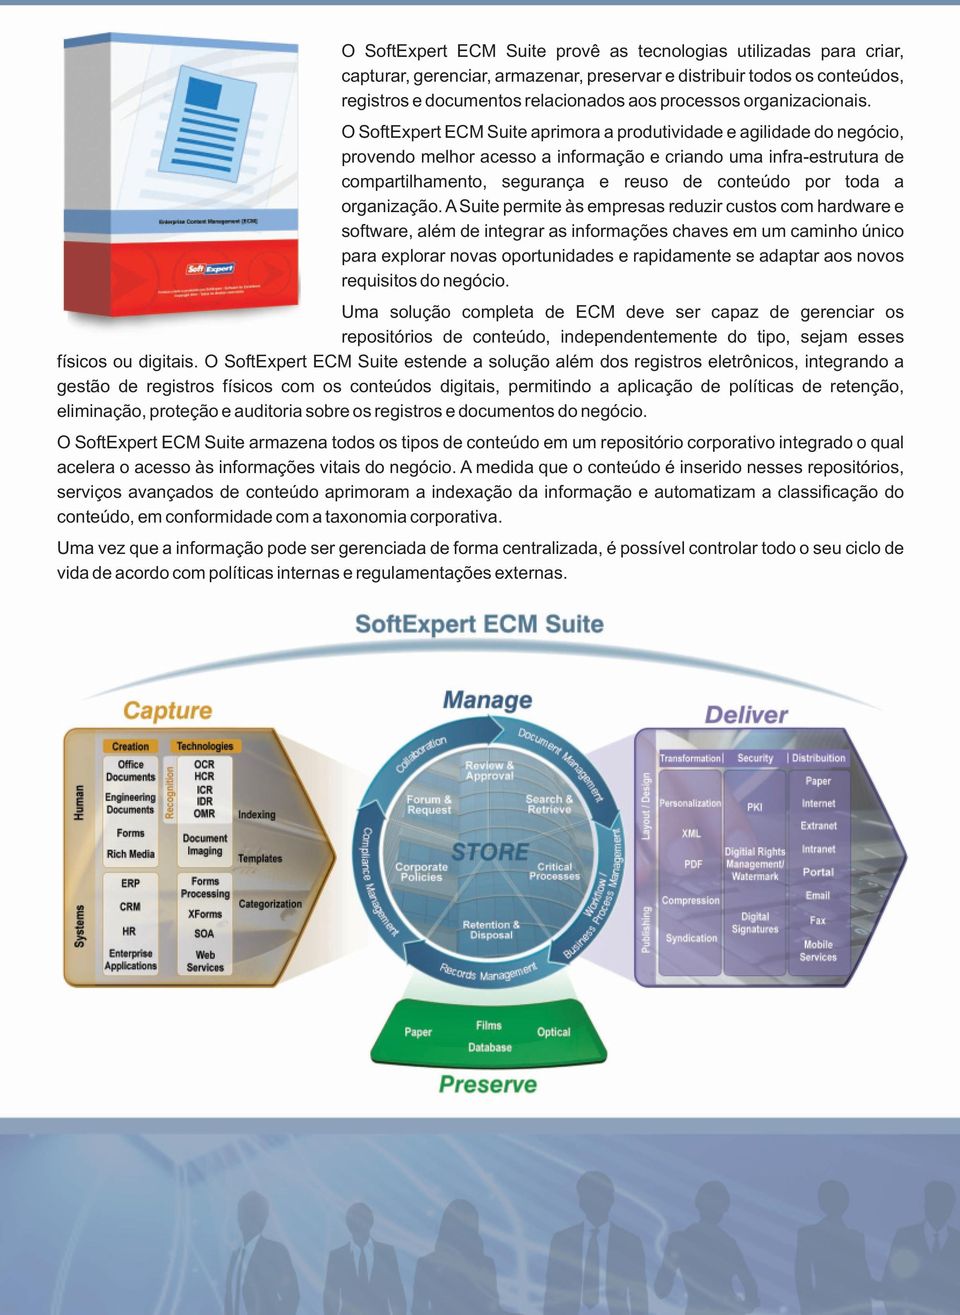 O SoftExpert ECM Suite aprimora a produtividade e agilidade do negócio, provendo melhor acesso a informação e criando uma infra-estrutura de compartilhamento, segurança e reuso de conteúdo por toda a